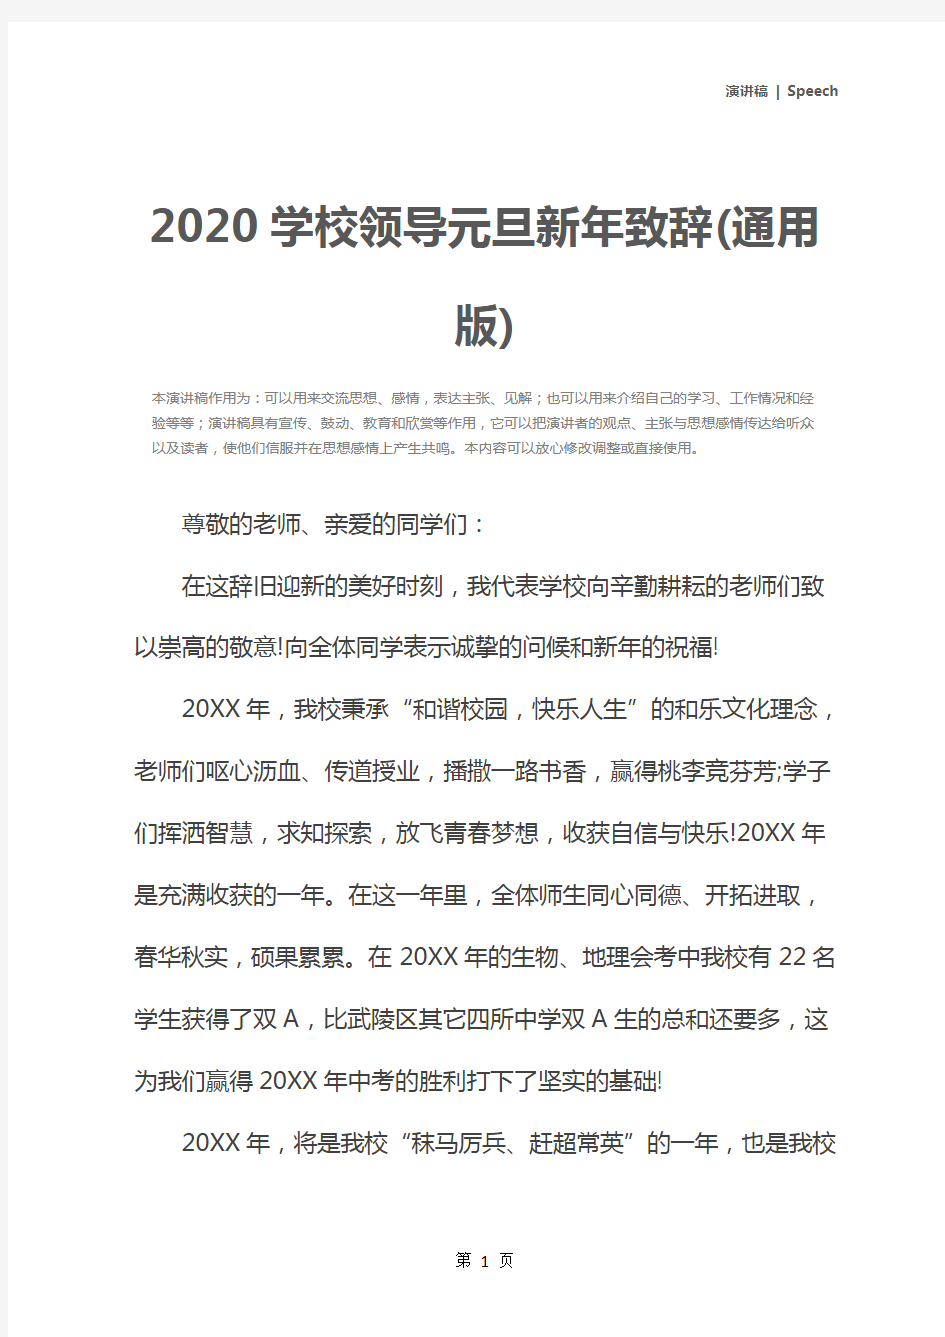 2020学校领导元旦新年致辞(通用版)